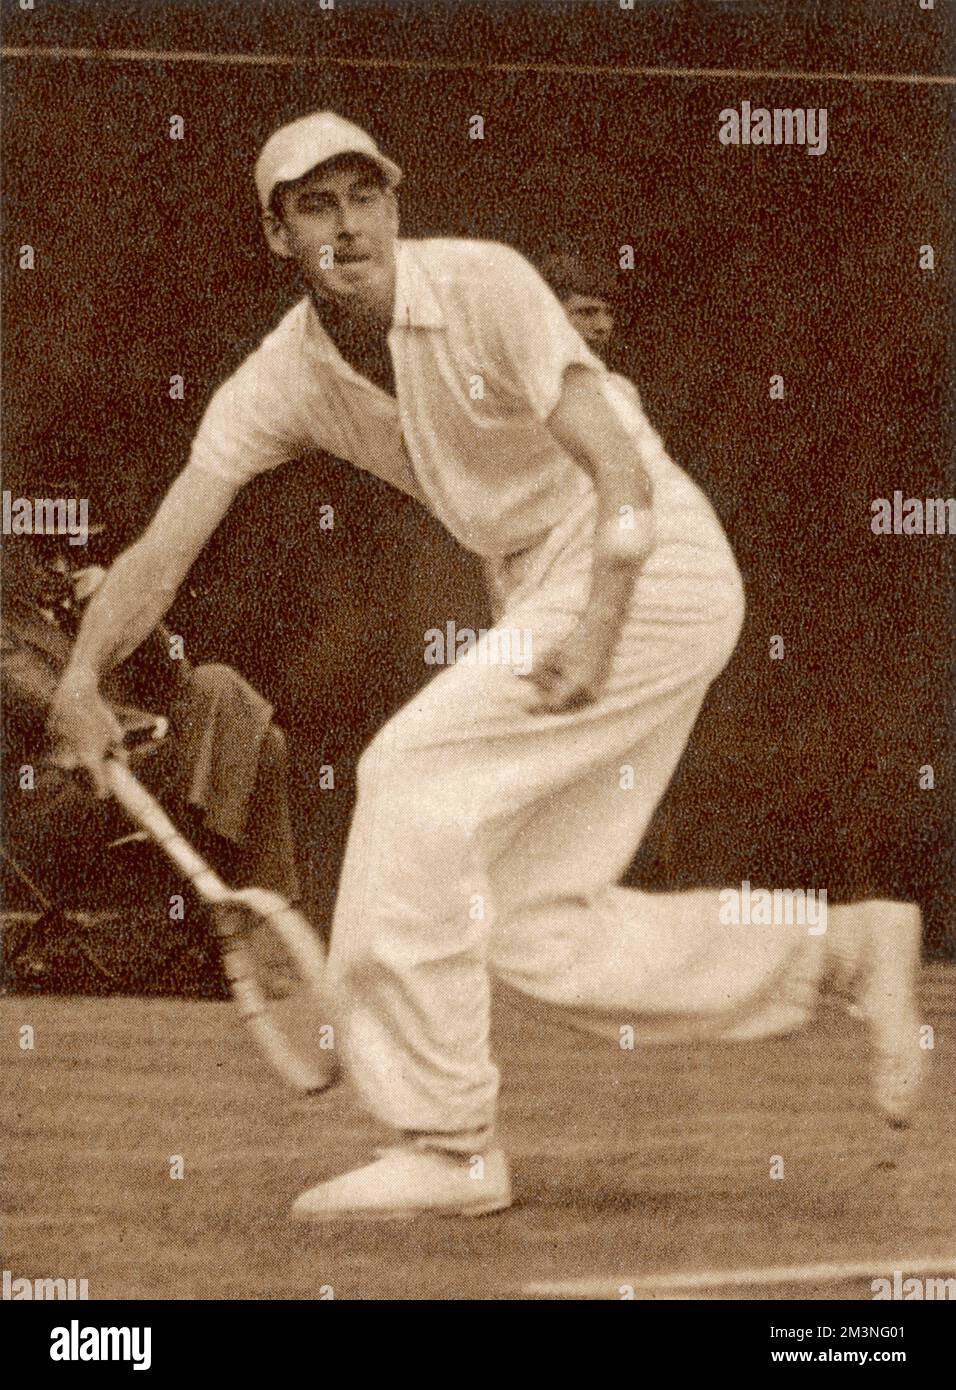 Yvon Petra (1916-1984), französischer Tennisspieler, gewann 1946 in Wimbledon die Singles-Weltmeisterschaft der Männer. Er hat den Australian Geoffrey Brown im Finale besiegt. Datum: 1946 Stockfoto